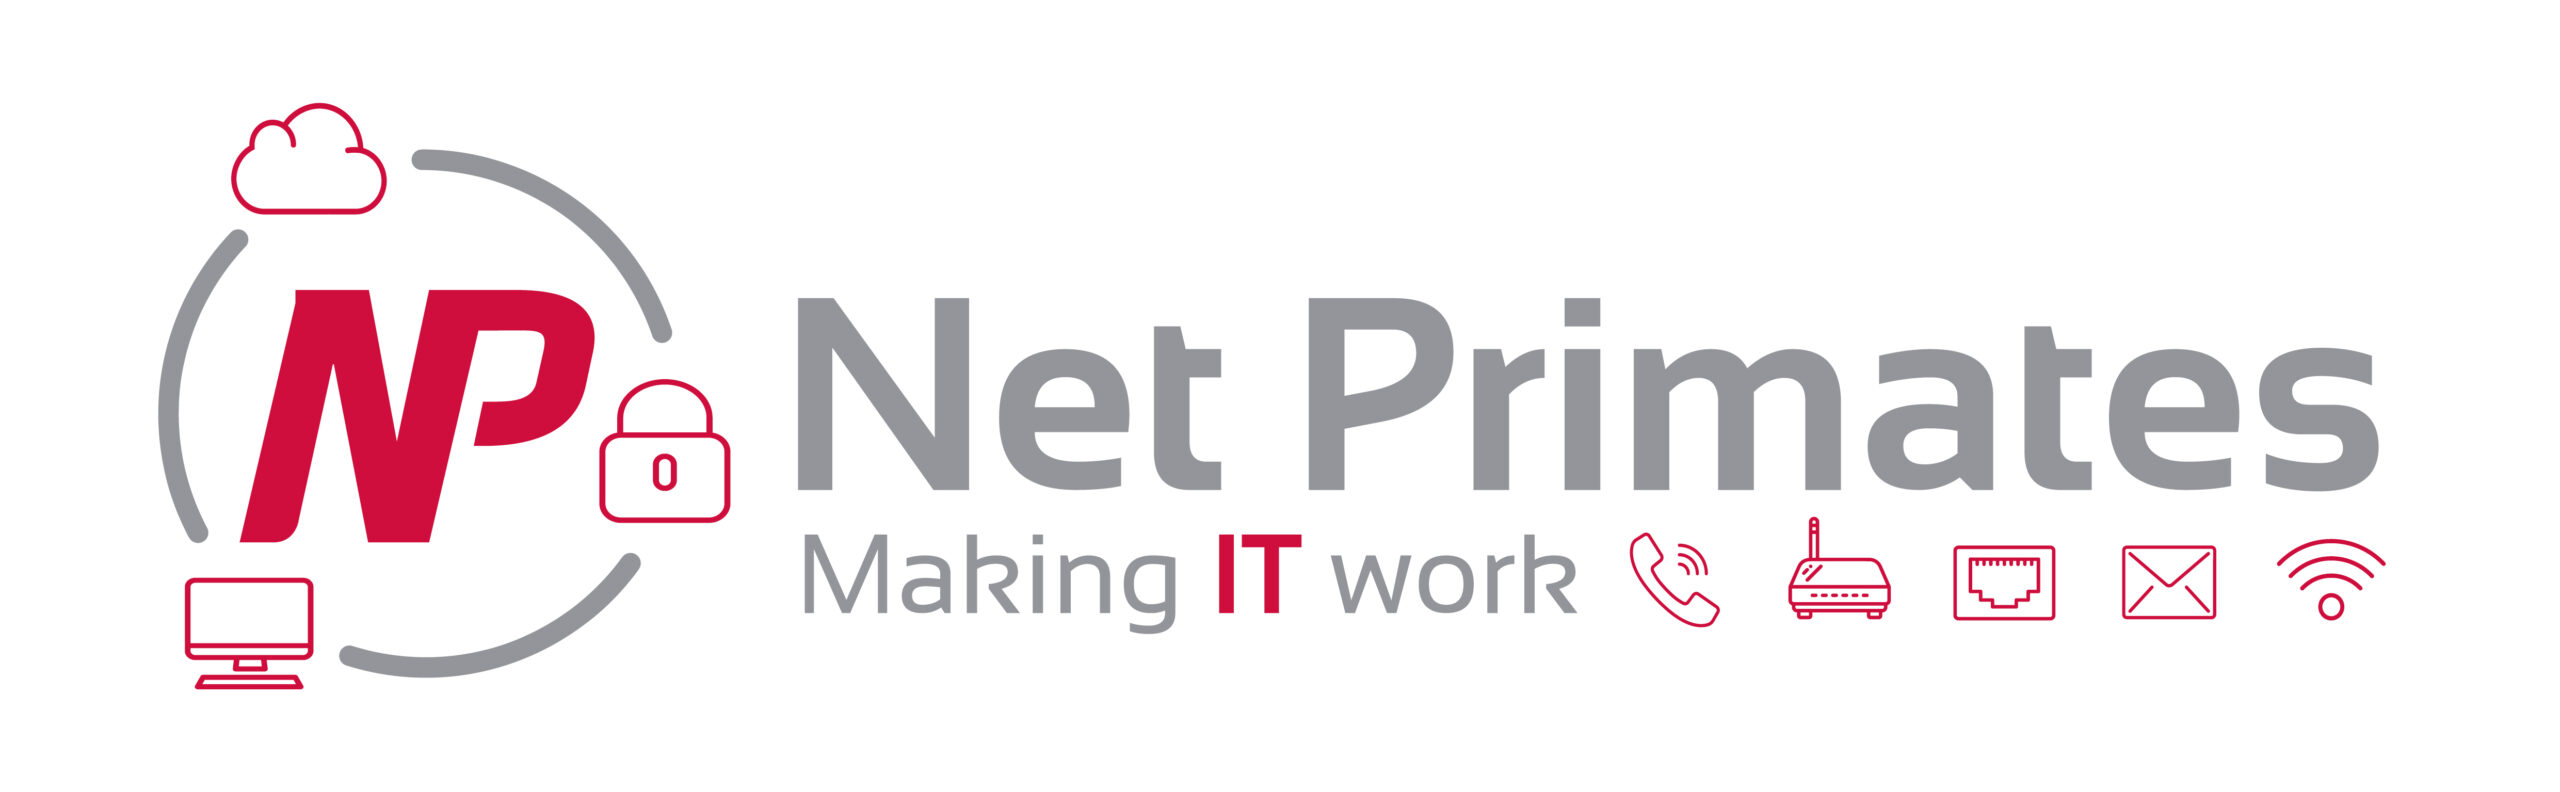 Net Primates new company branding.